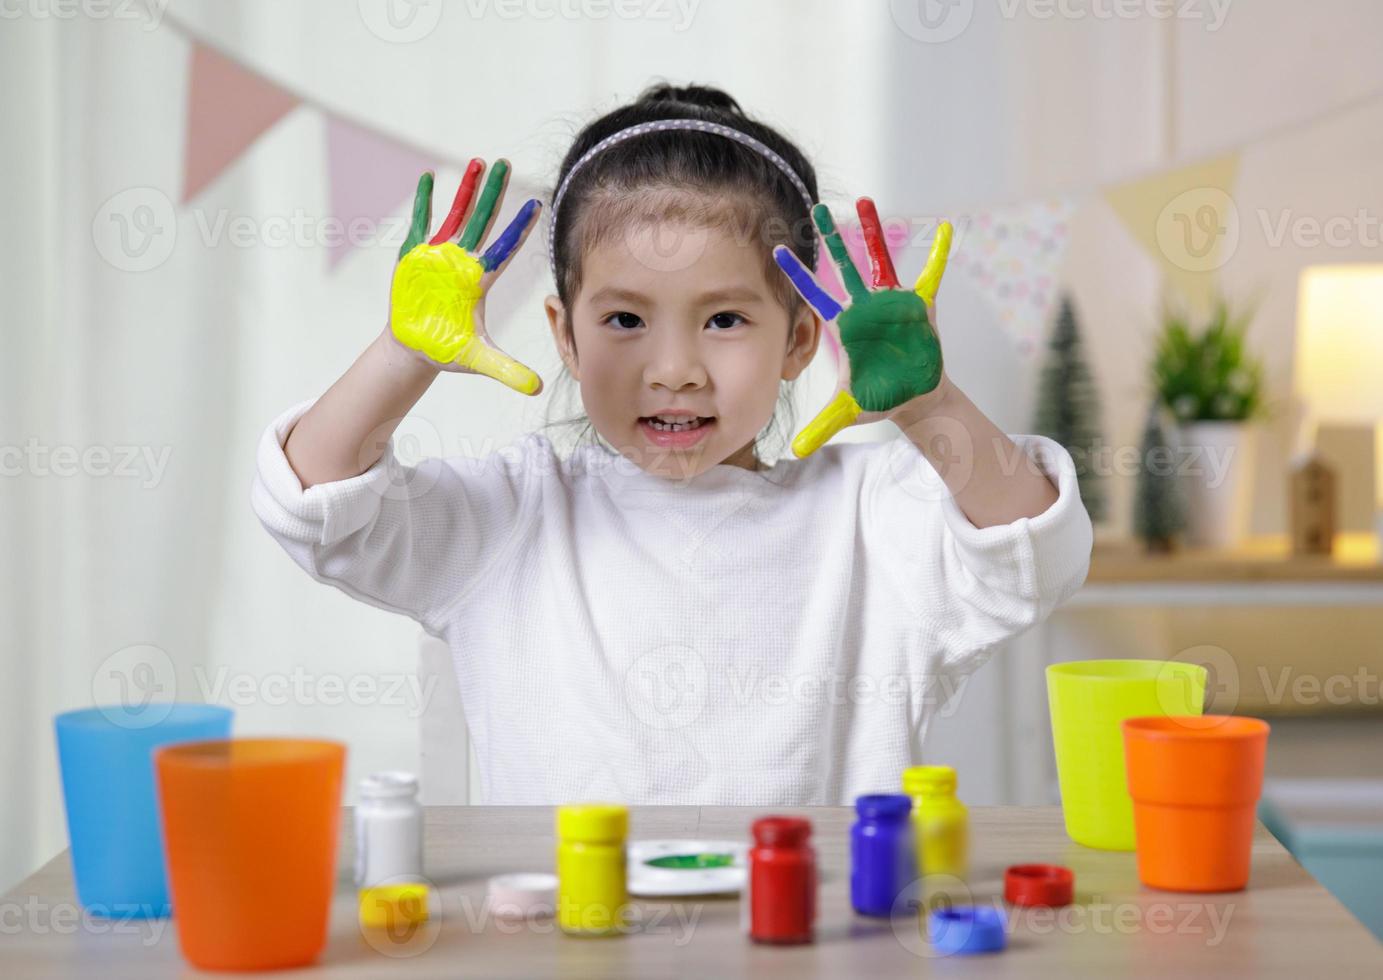 kindliche kreativität, kleine asiatische mädchenhände, die im klassenzimmer zu hause in bunten farben bemalt sind, pädagogisches konzept für die schule foto